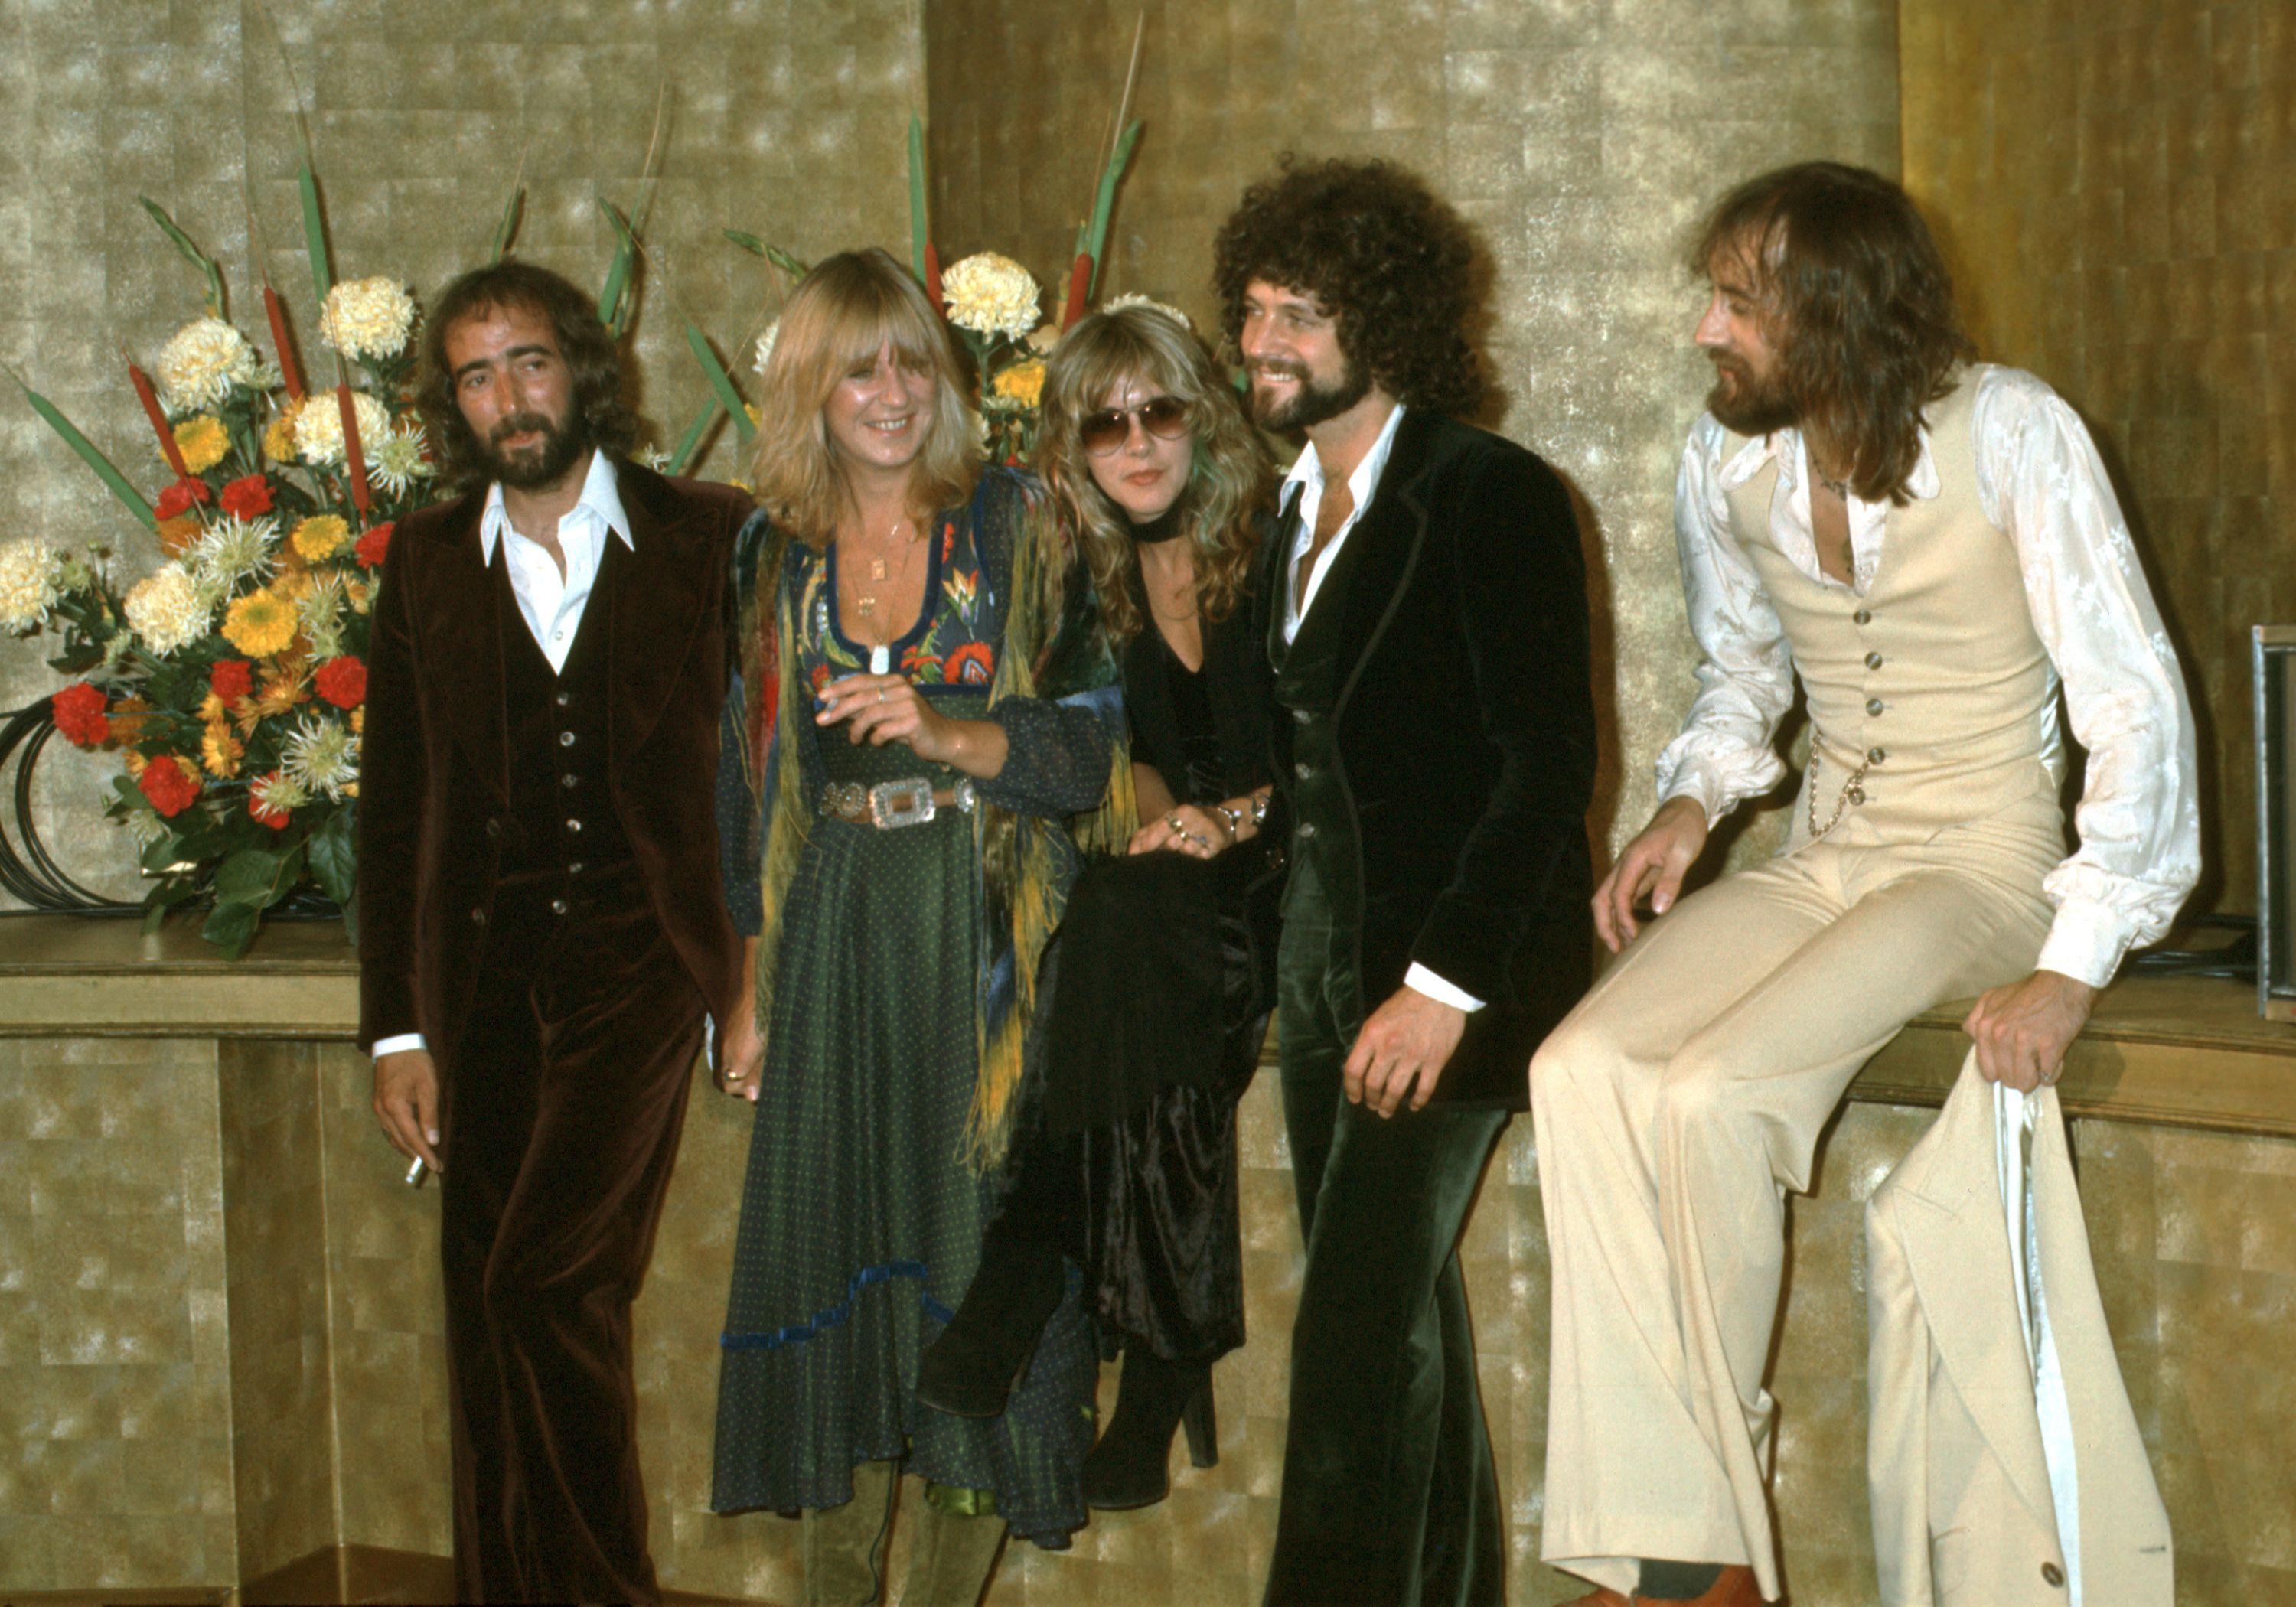 Fleetwood Mac members John McVie, Christine McVie, Stevie Nicks, Lindsey Buckingham, and Mick Fleetwood in 1977. 